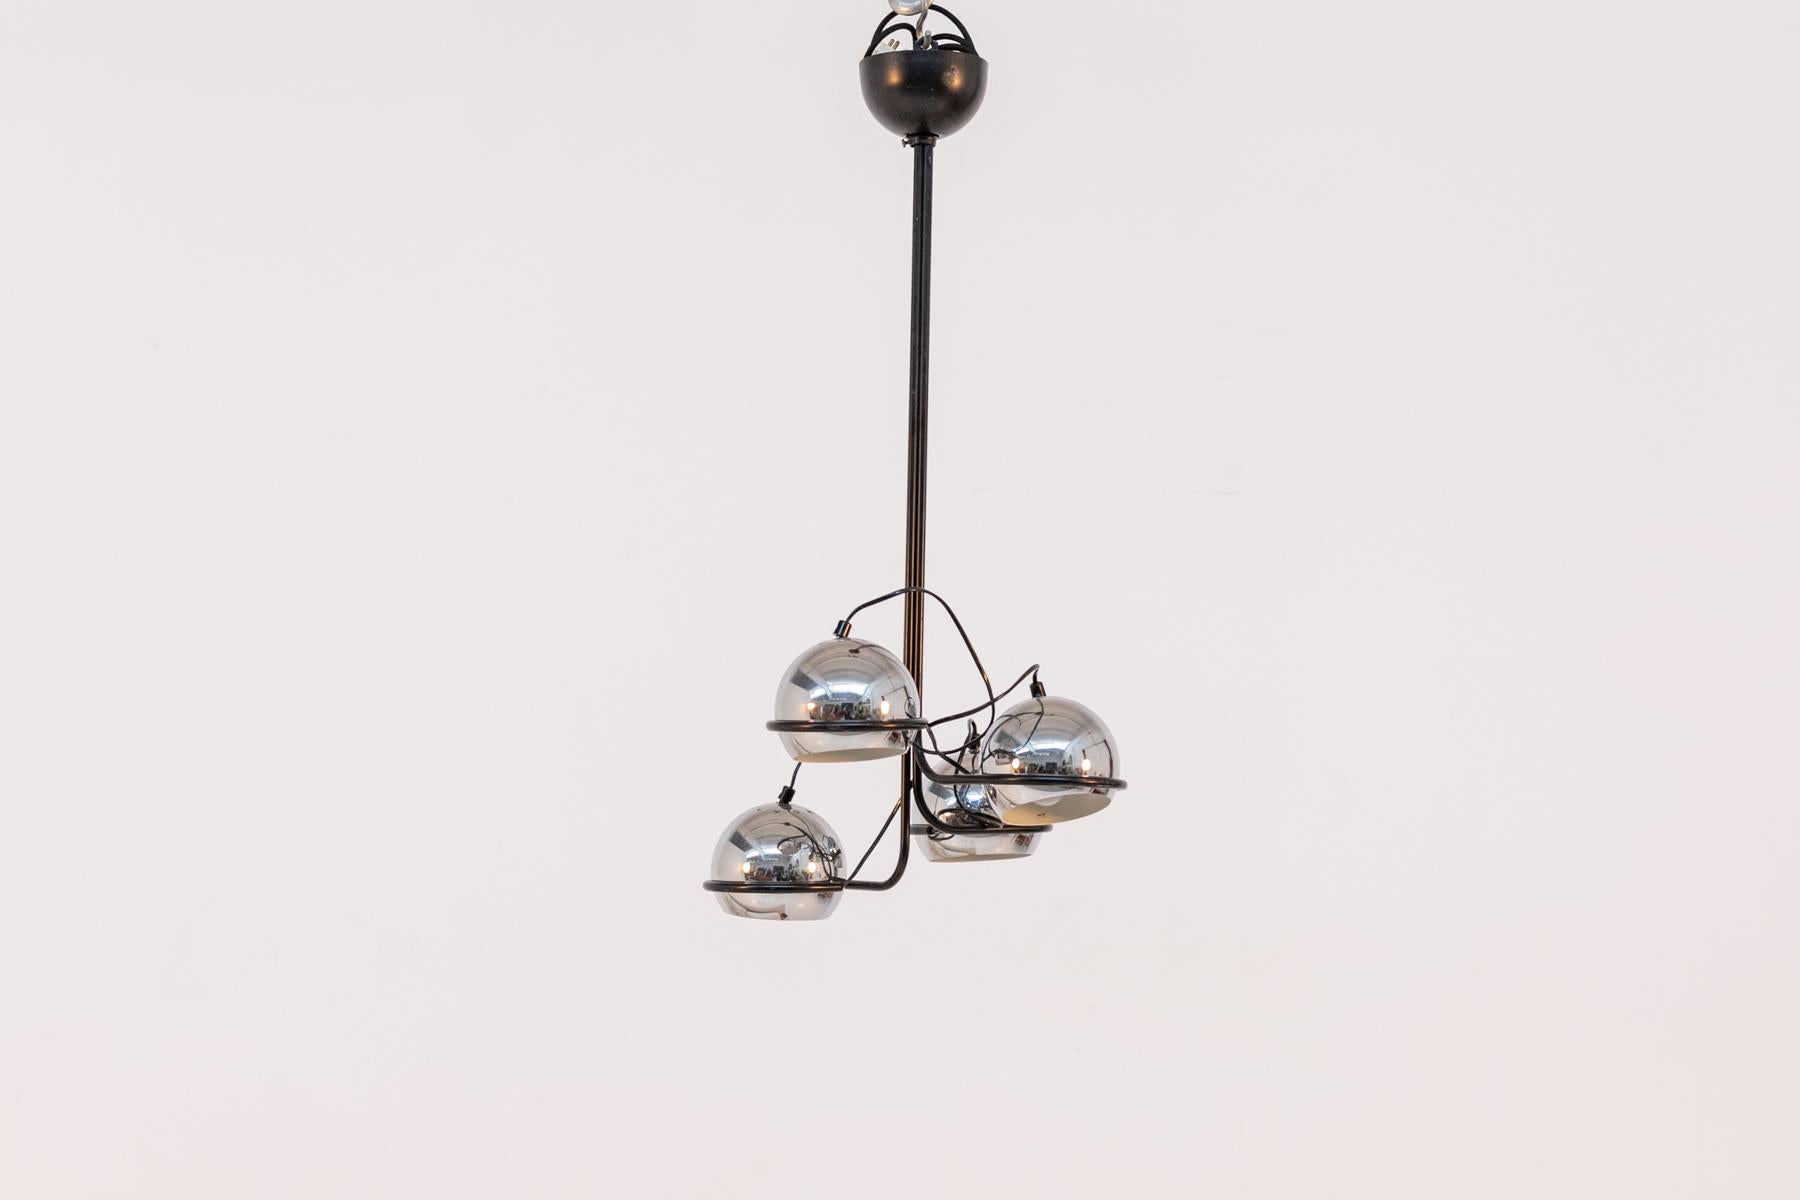 Merveilleuse lampe en aluminium chromé des années 60, de fabrication italienne de qualité.
La lampe est formée par une tige centrale en aluminium chromé, de couleur noire. Les lampes en sont au contraire 4 et sont placées sous un chapeau